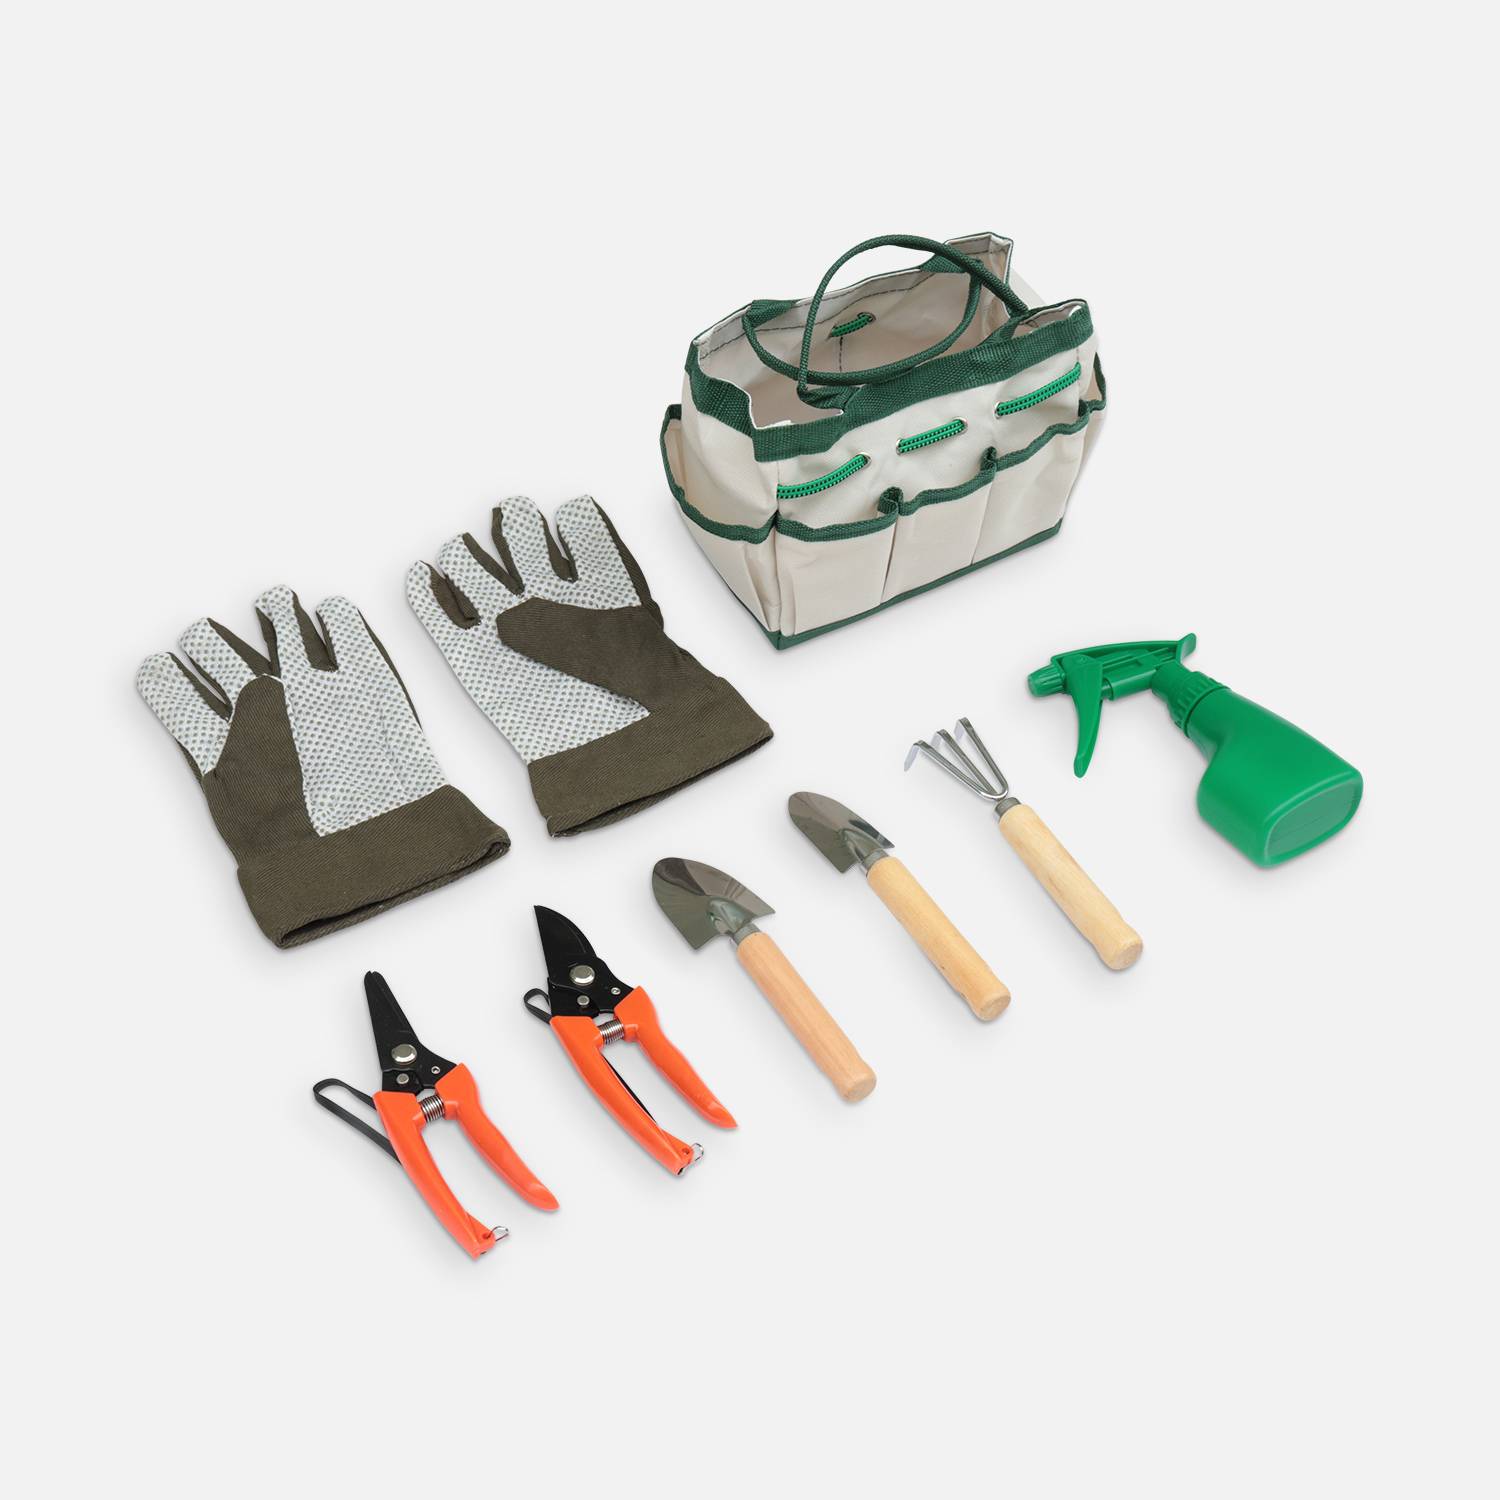 Sacoche set d’outils de jardinage avec gants, râteau, mini pelle, transplantoir, sécateur, cisaille et pulvérisateur, kit complet pour jardin Photo1